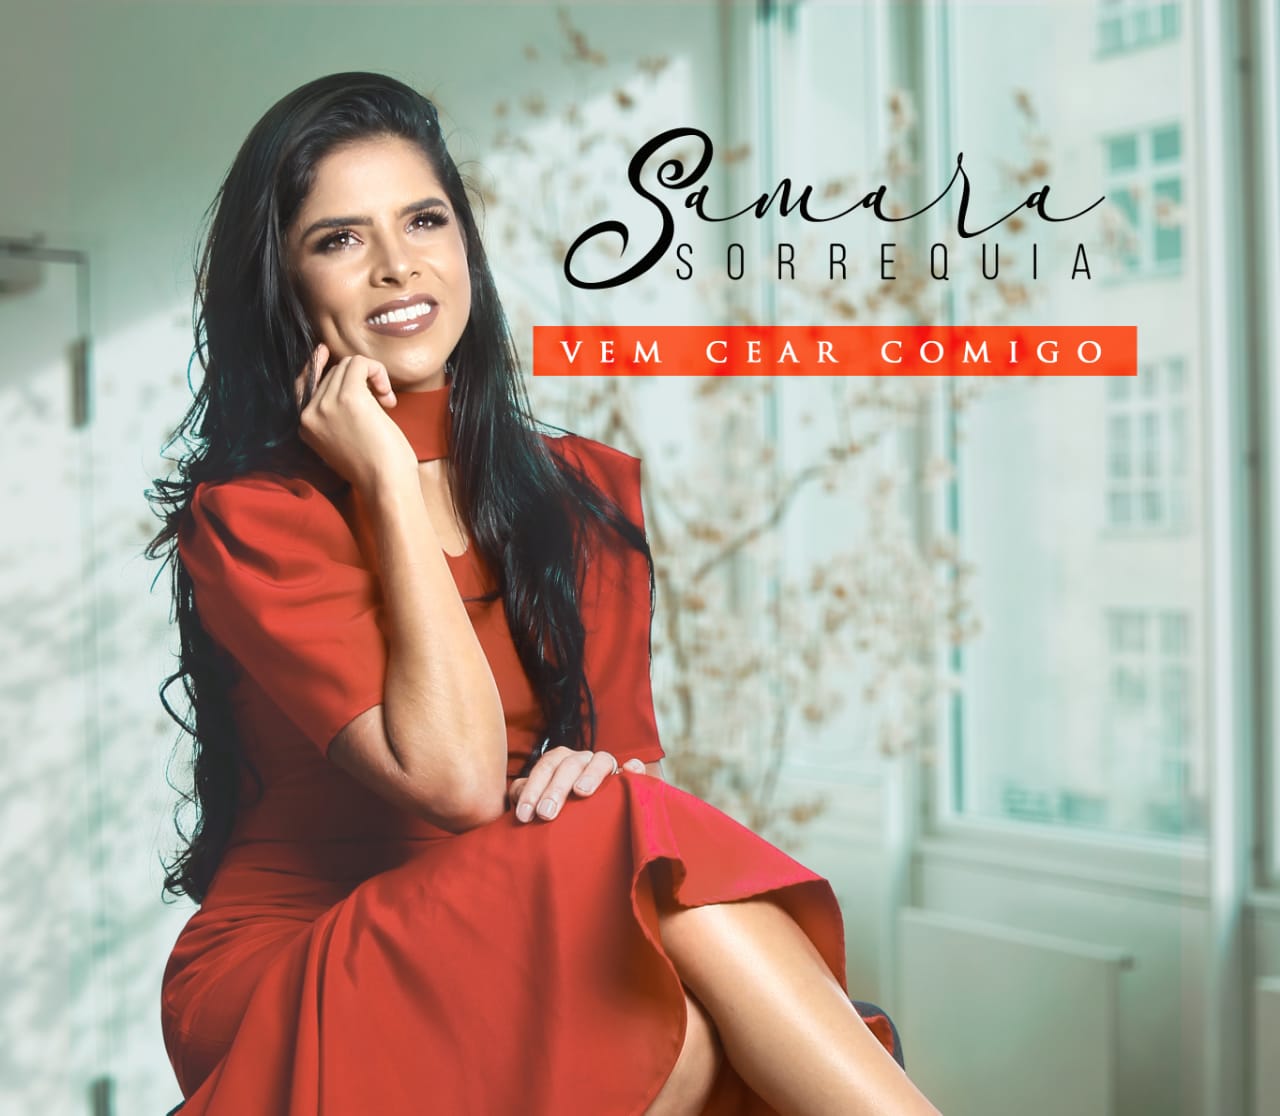 Samara Sorrequia lança seu primeiro videoclipe “Vem Cear Comigo”.